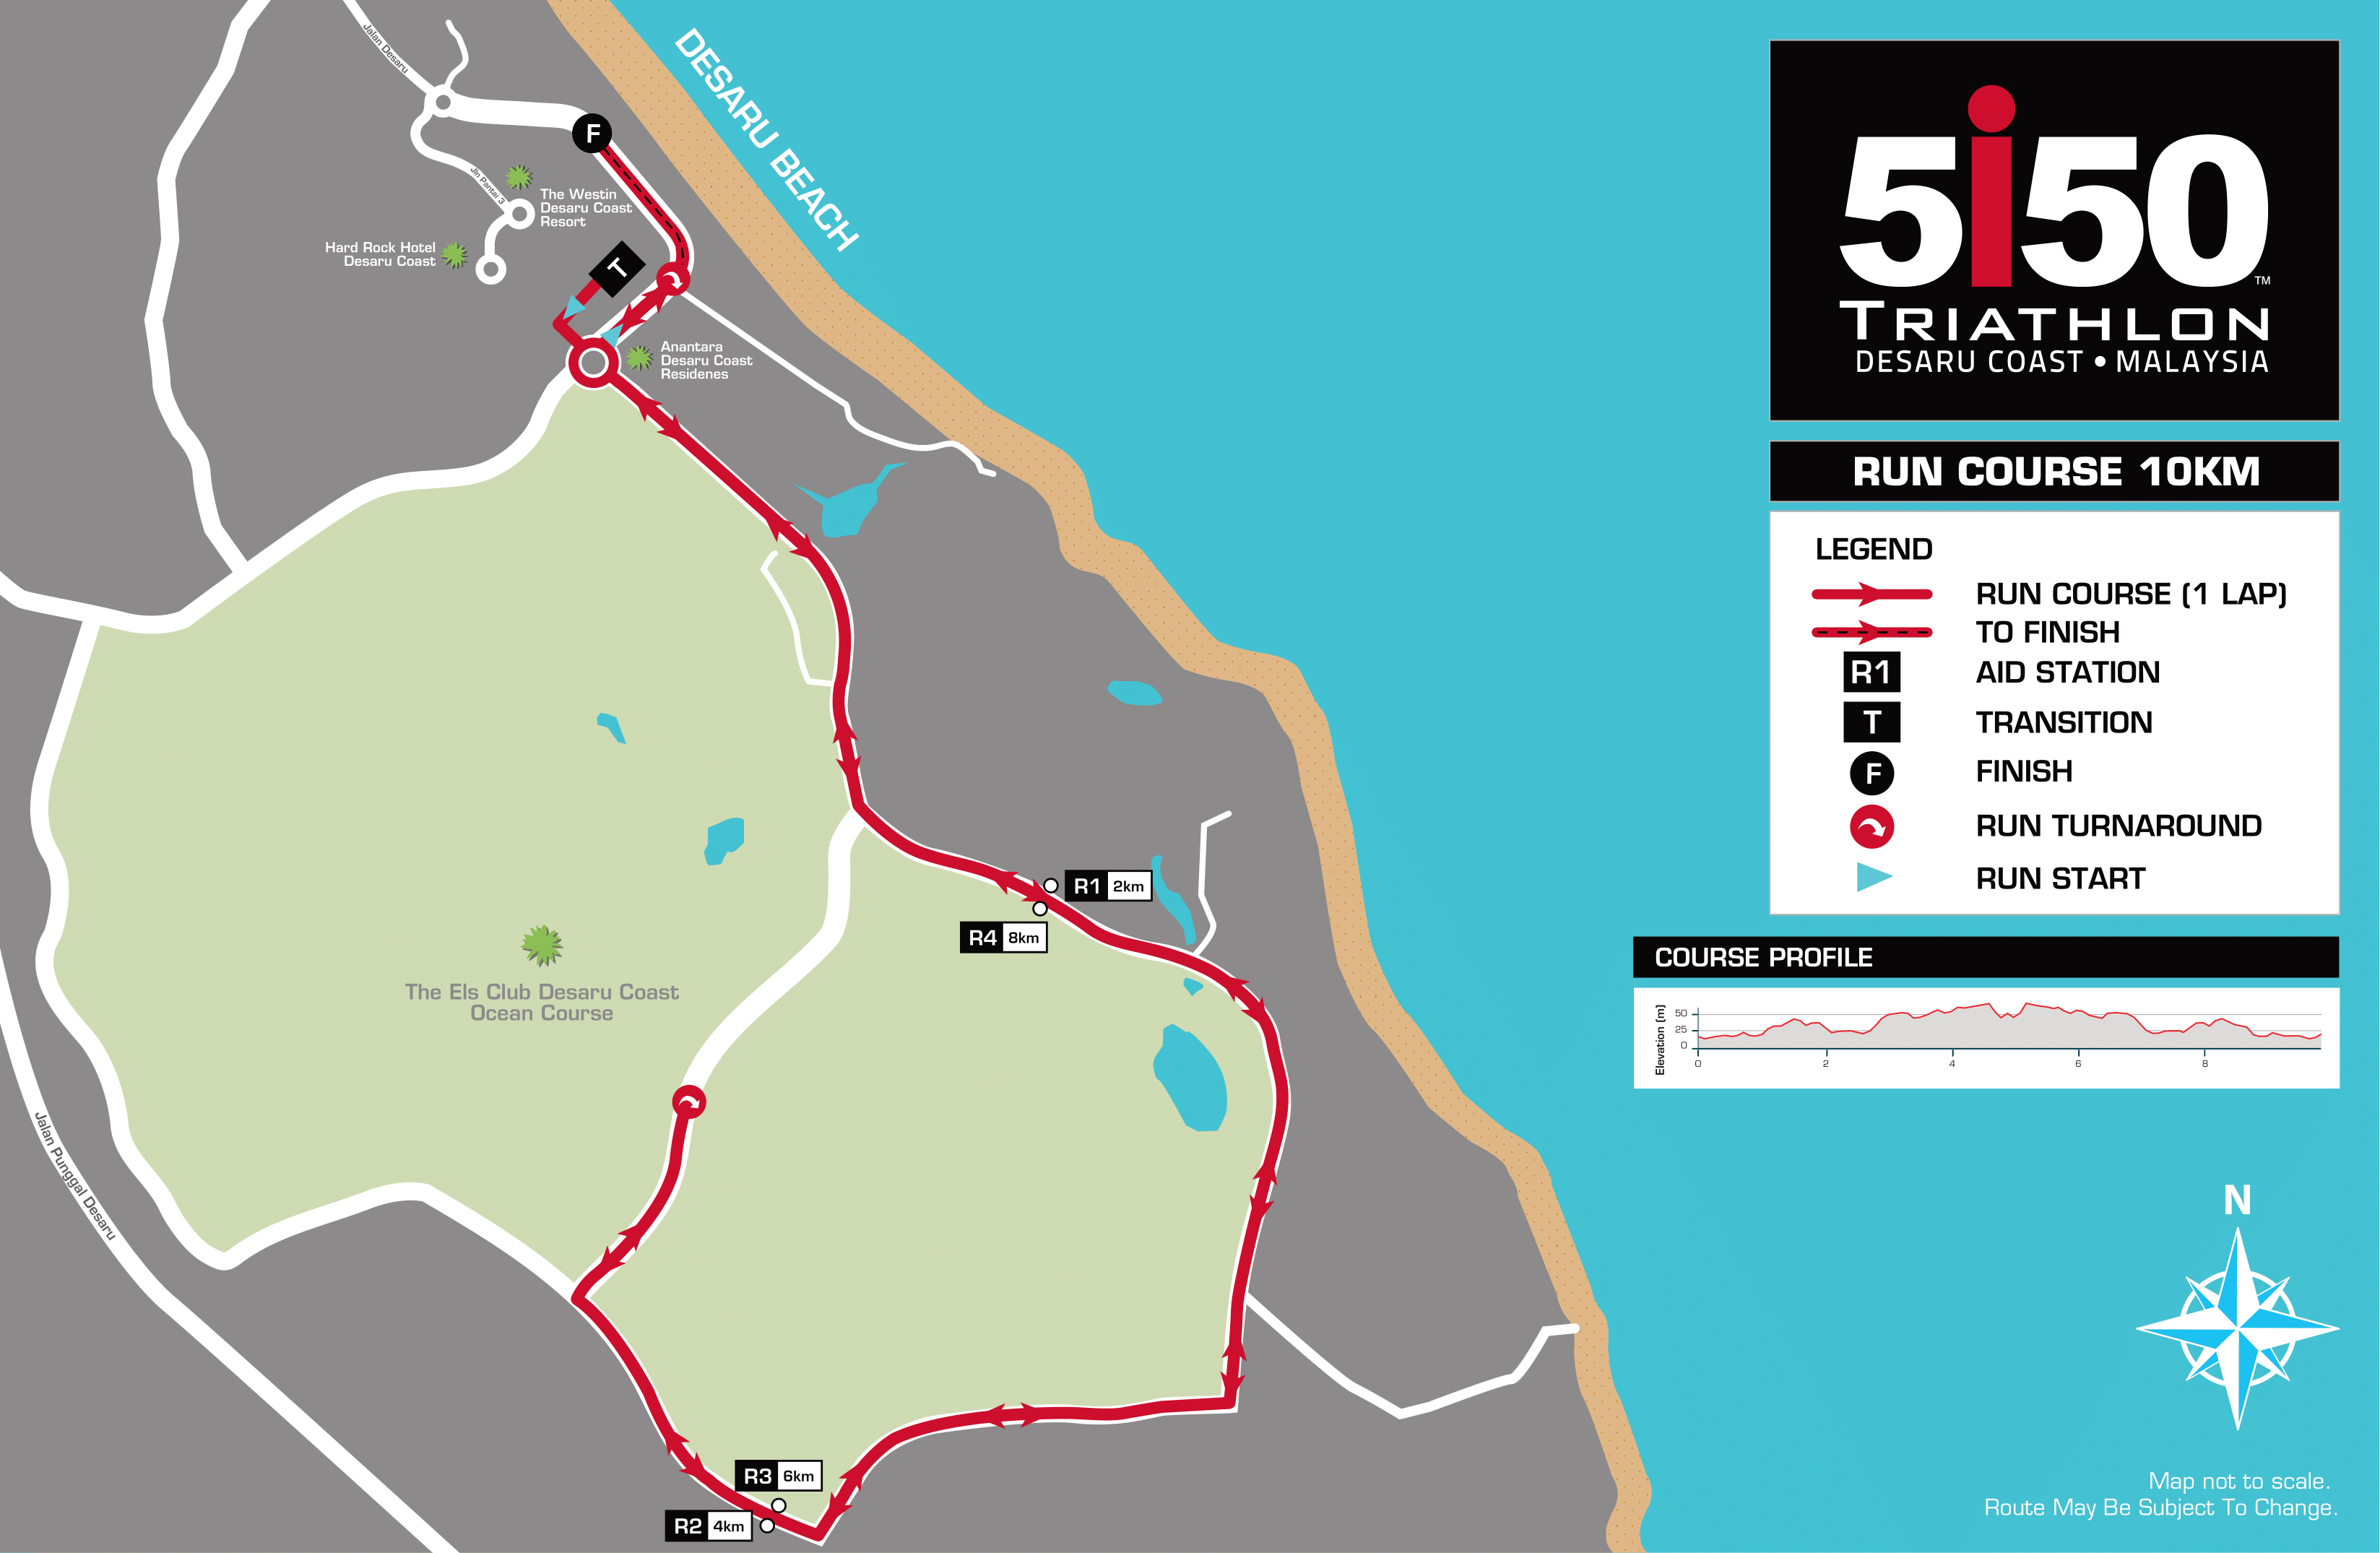 5150 Desaru Coast Run Course